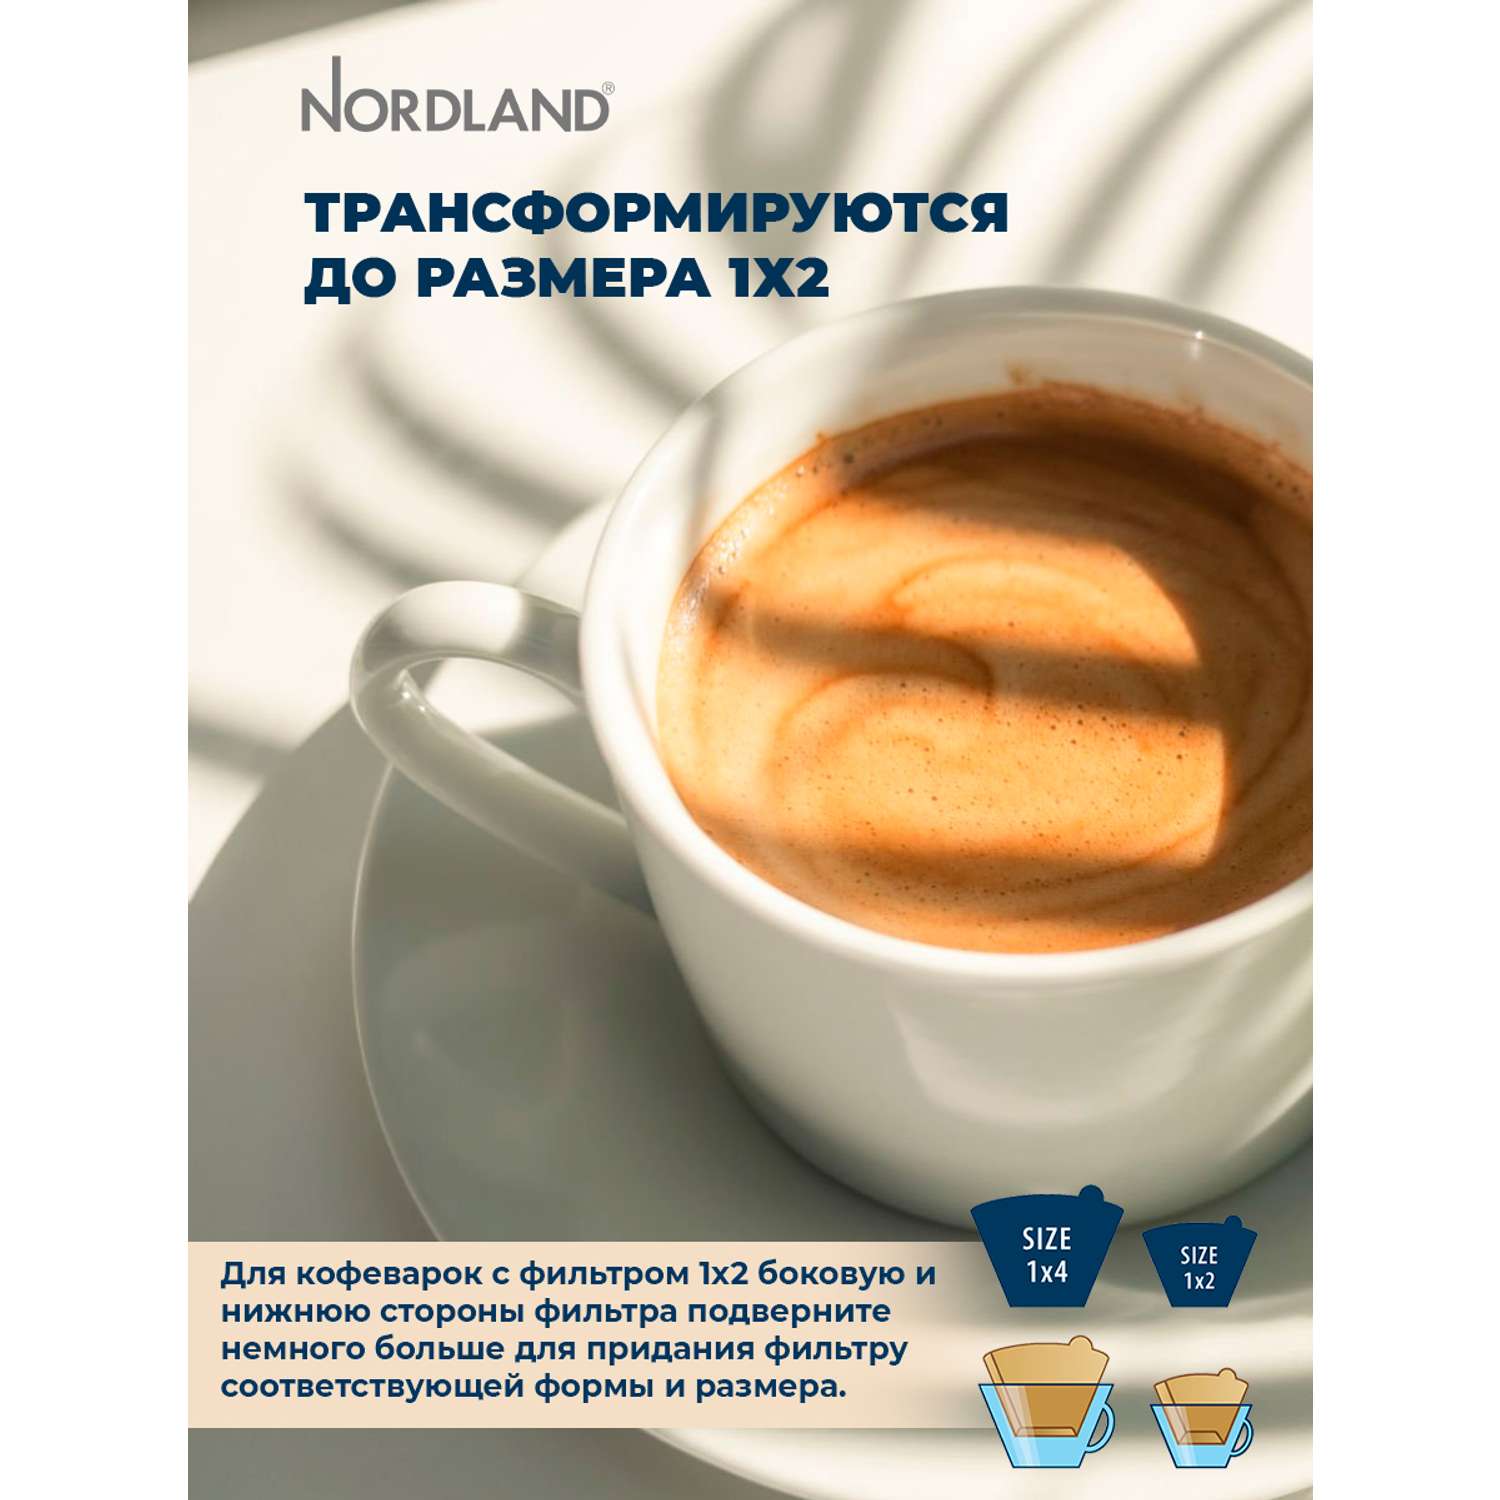 Фильтры Nordland для кофе неотбеленные размер 1х4. 100 шт. в коробке - фото 8